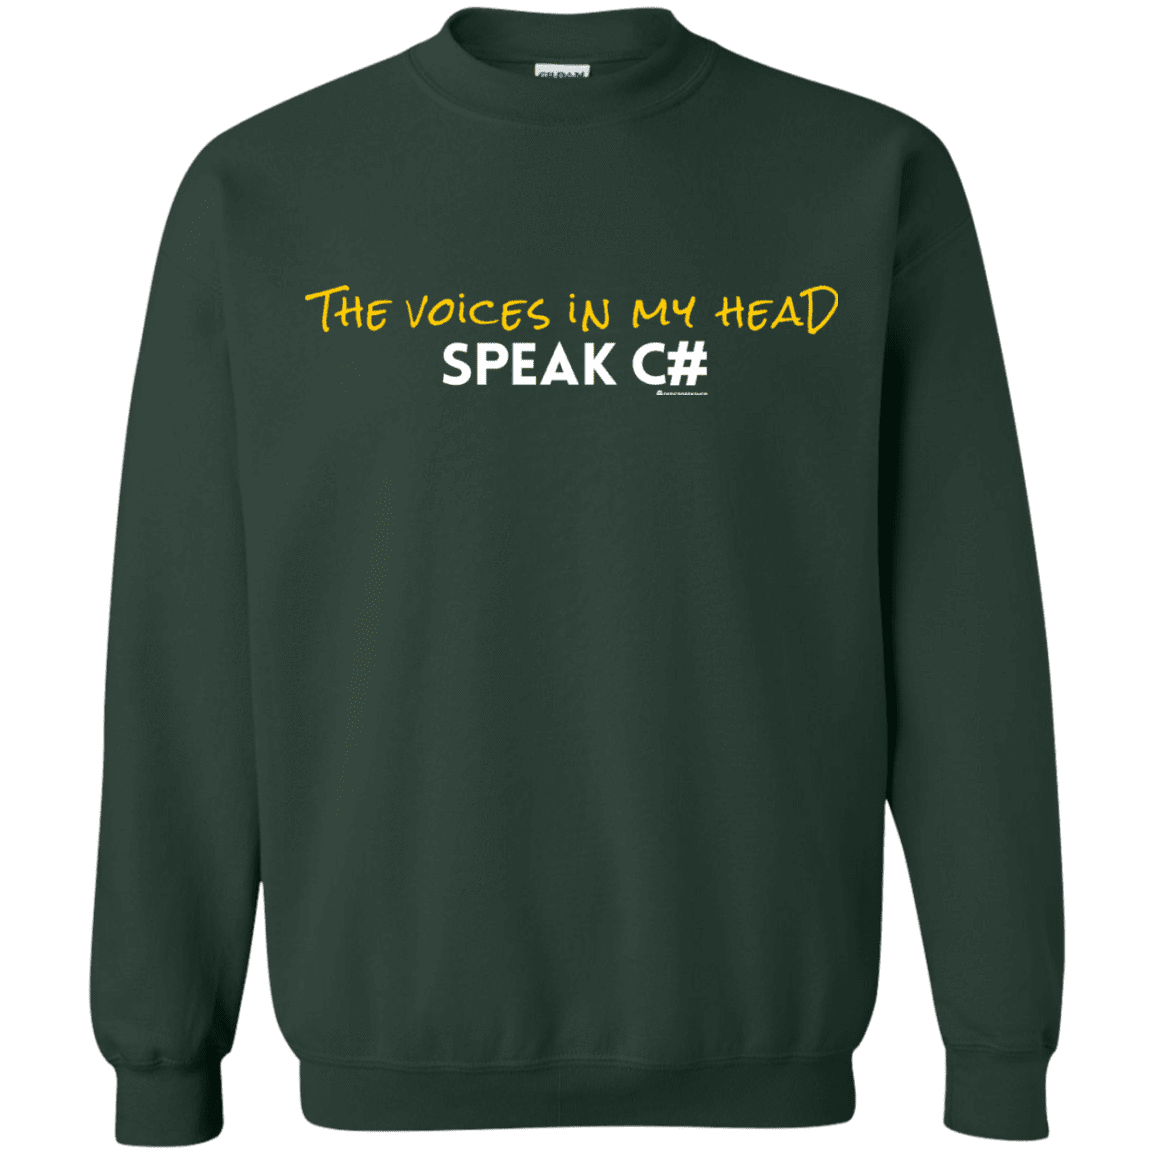 Sweatshirts Forest Green / Small The Voices In My Head Speak C# Crewneck Sweatshirt